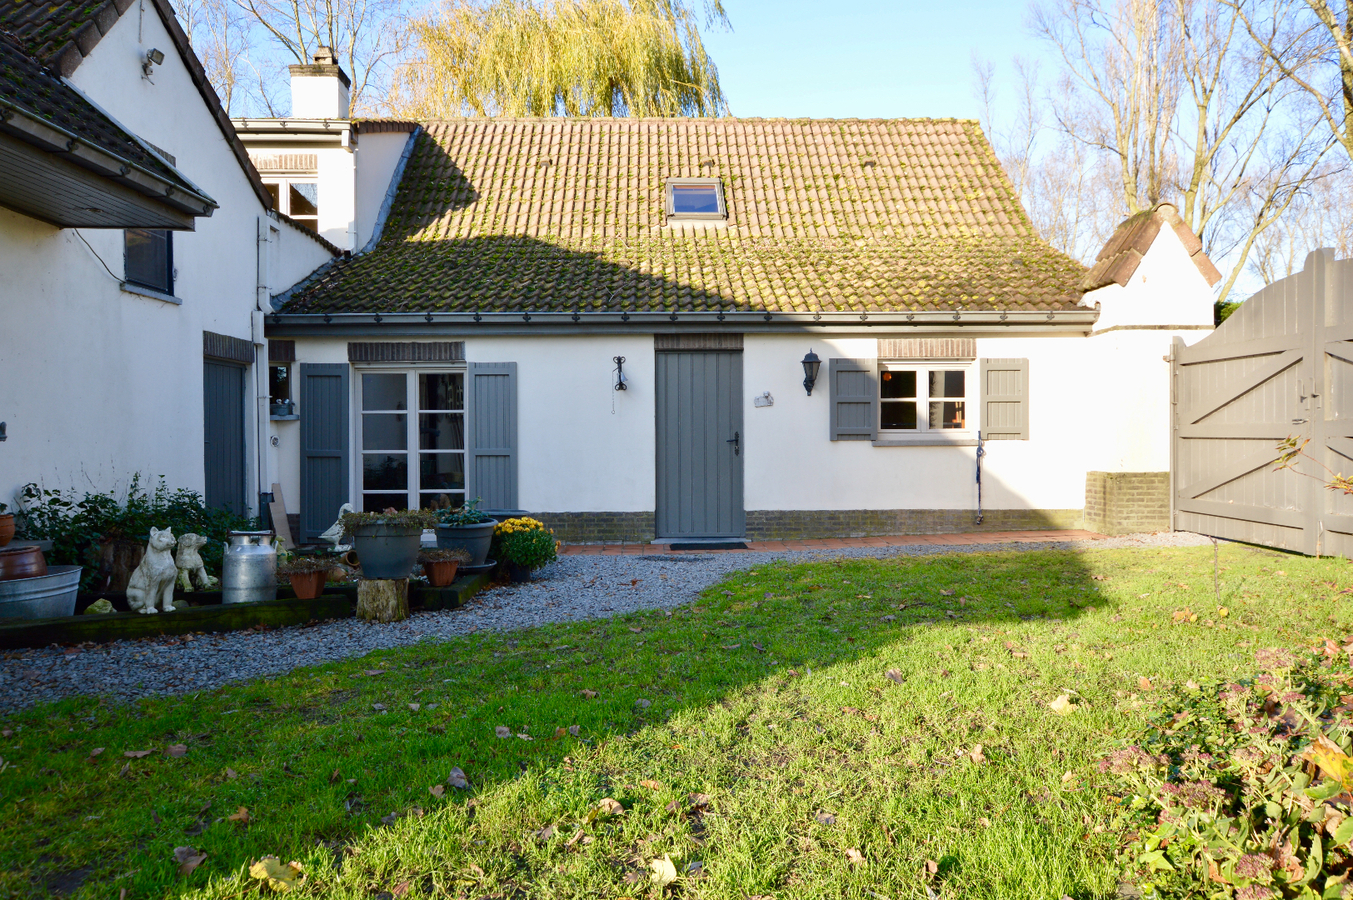 Property sold in Eernegem